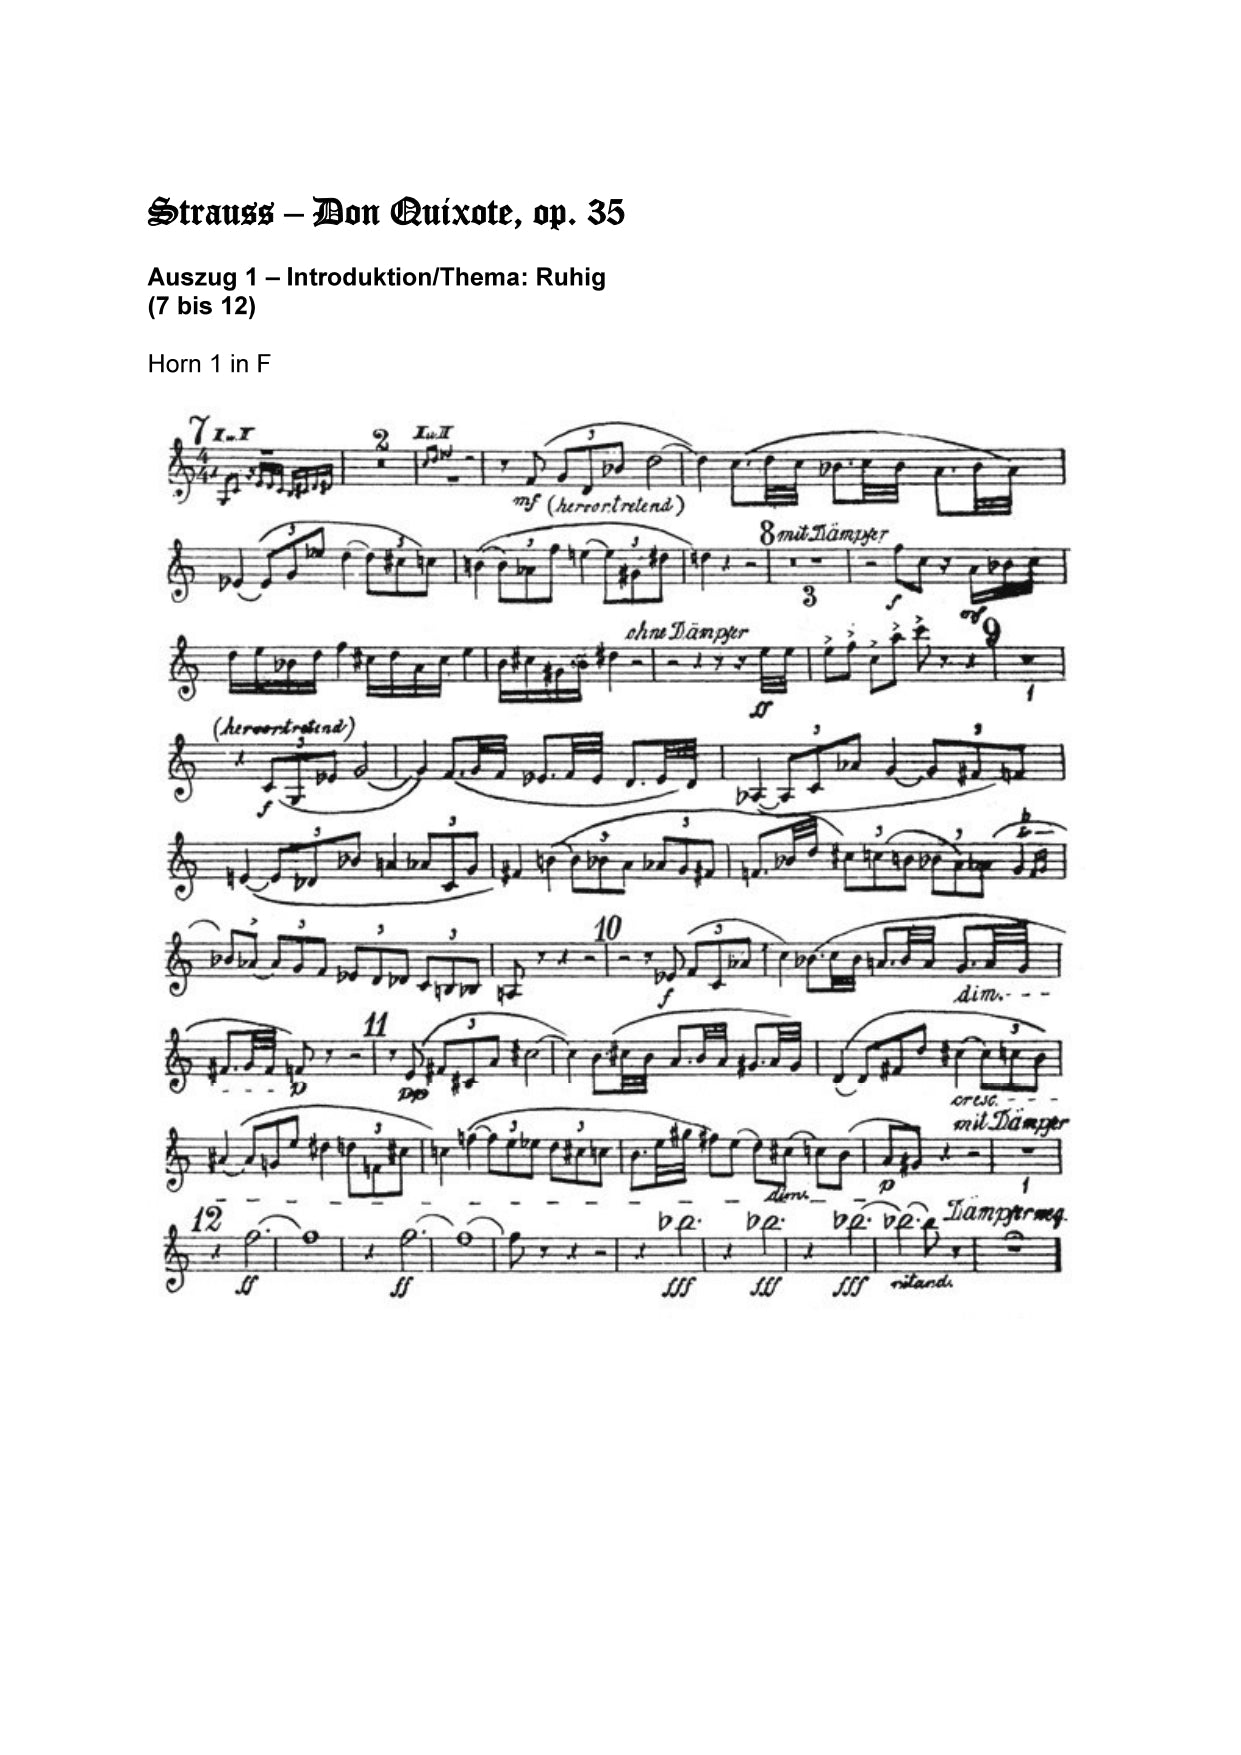 Orchester Studie - Richard Strauss - Don Quixote, Horn 1,2,3,4